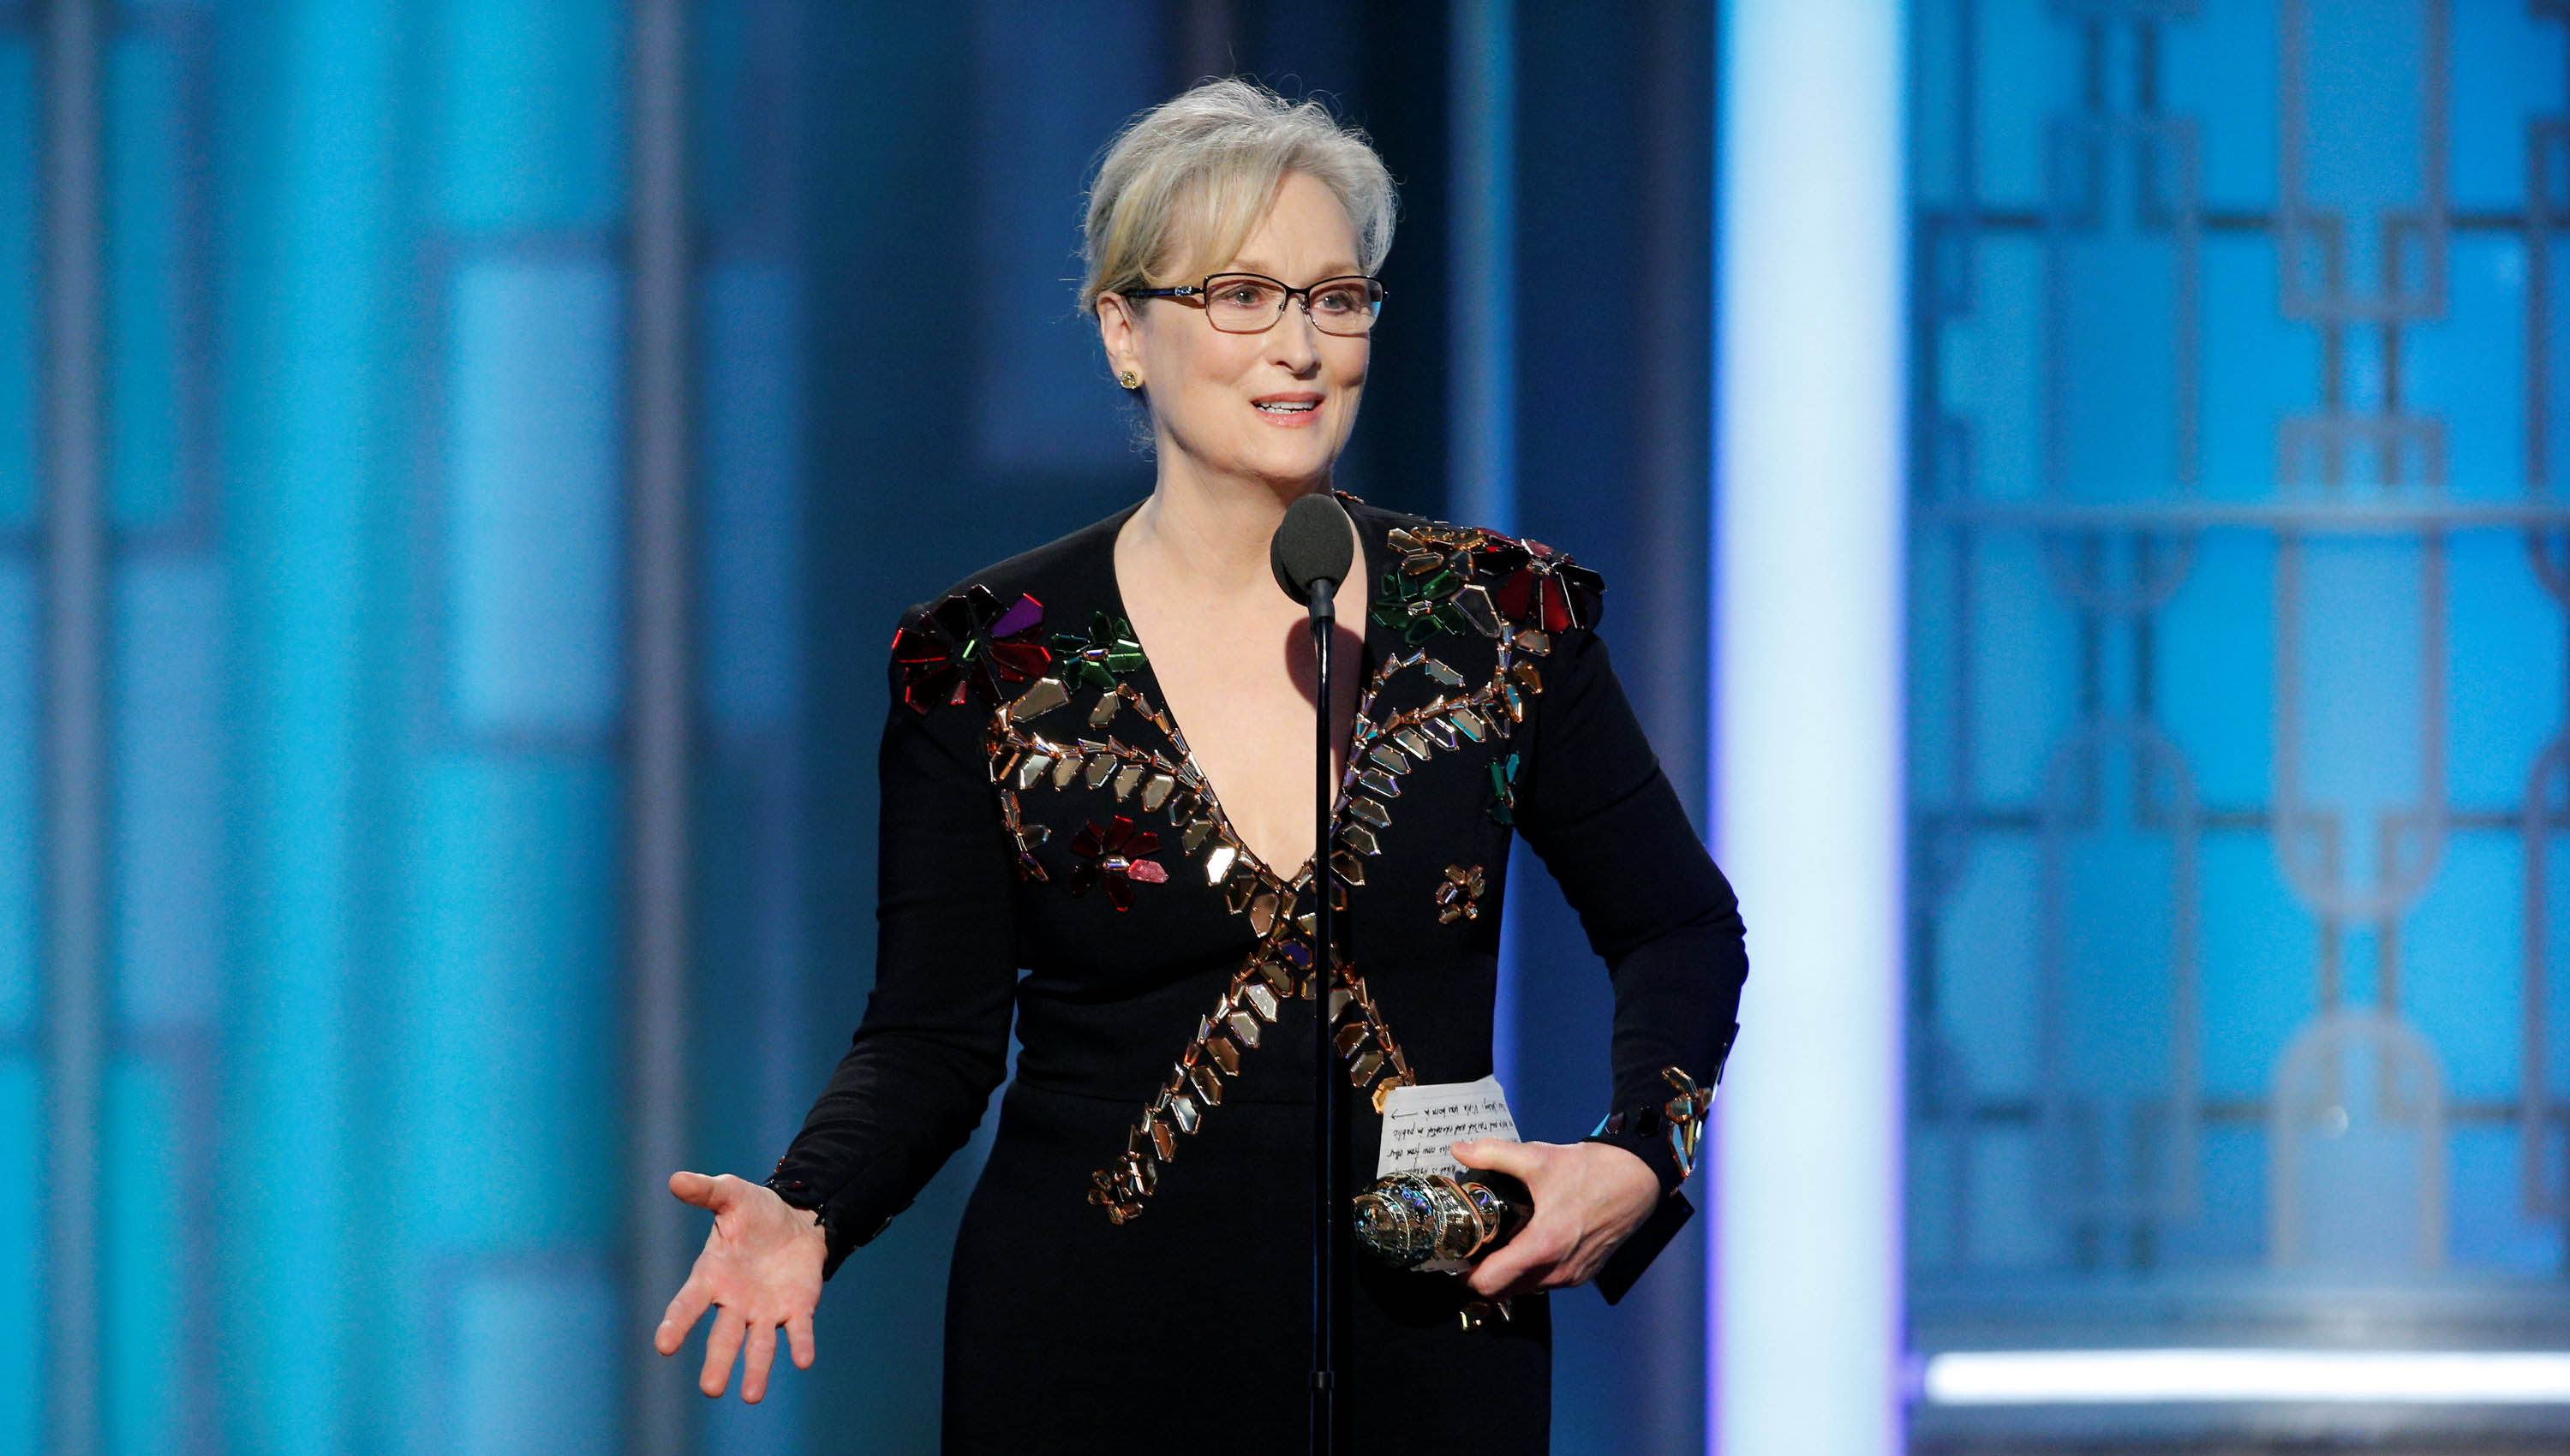 La actriz Meryl Streep recibió el Globo de Oro honorífico.